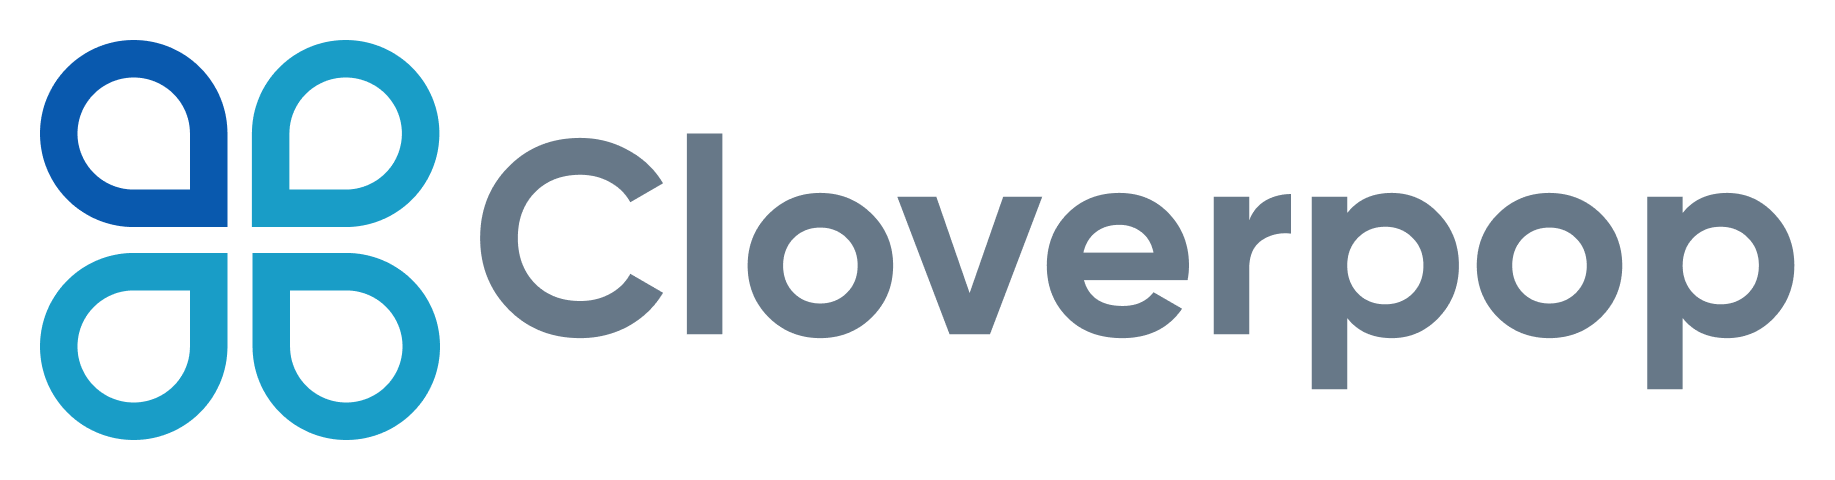 Cloverpop_logo_whitebg